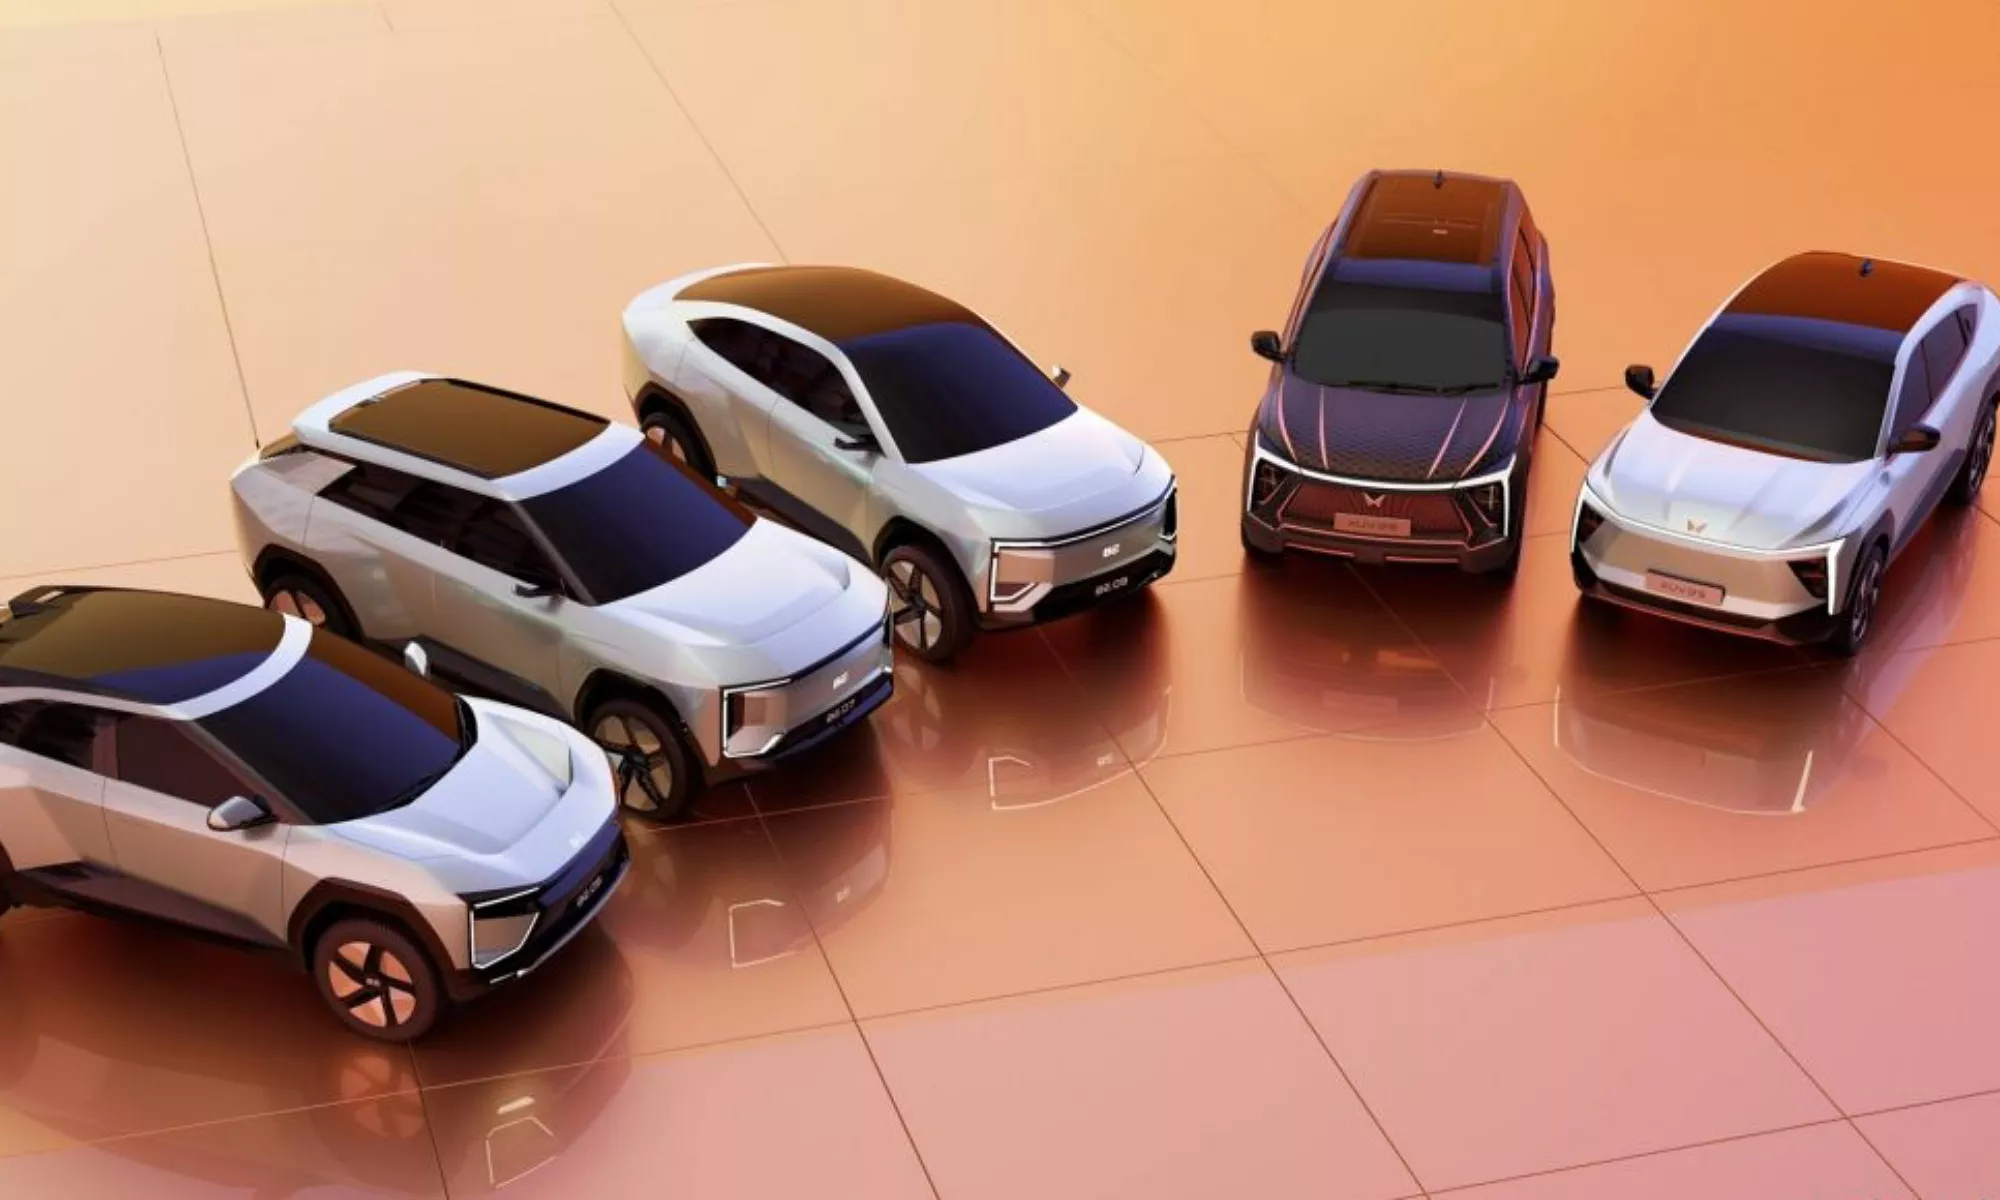 Mahindra ha propuesto cinco lanzamientos eléctricos basados en la tecnología de Volkswagen.